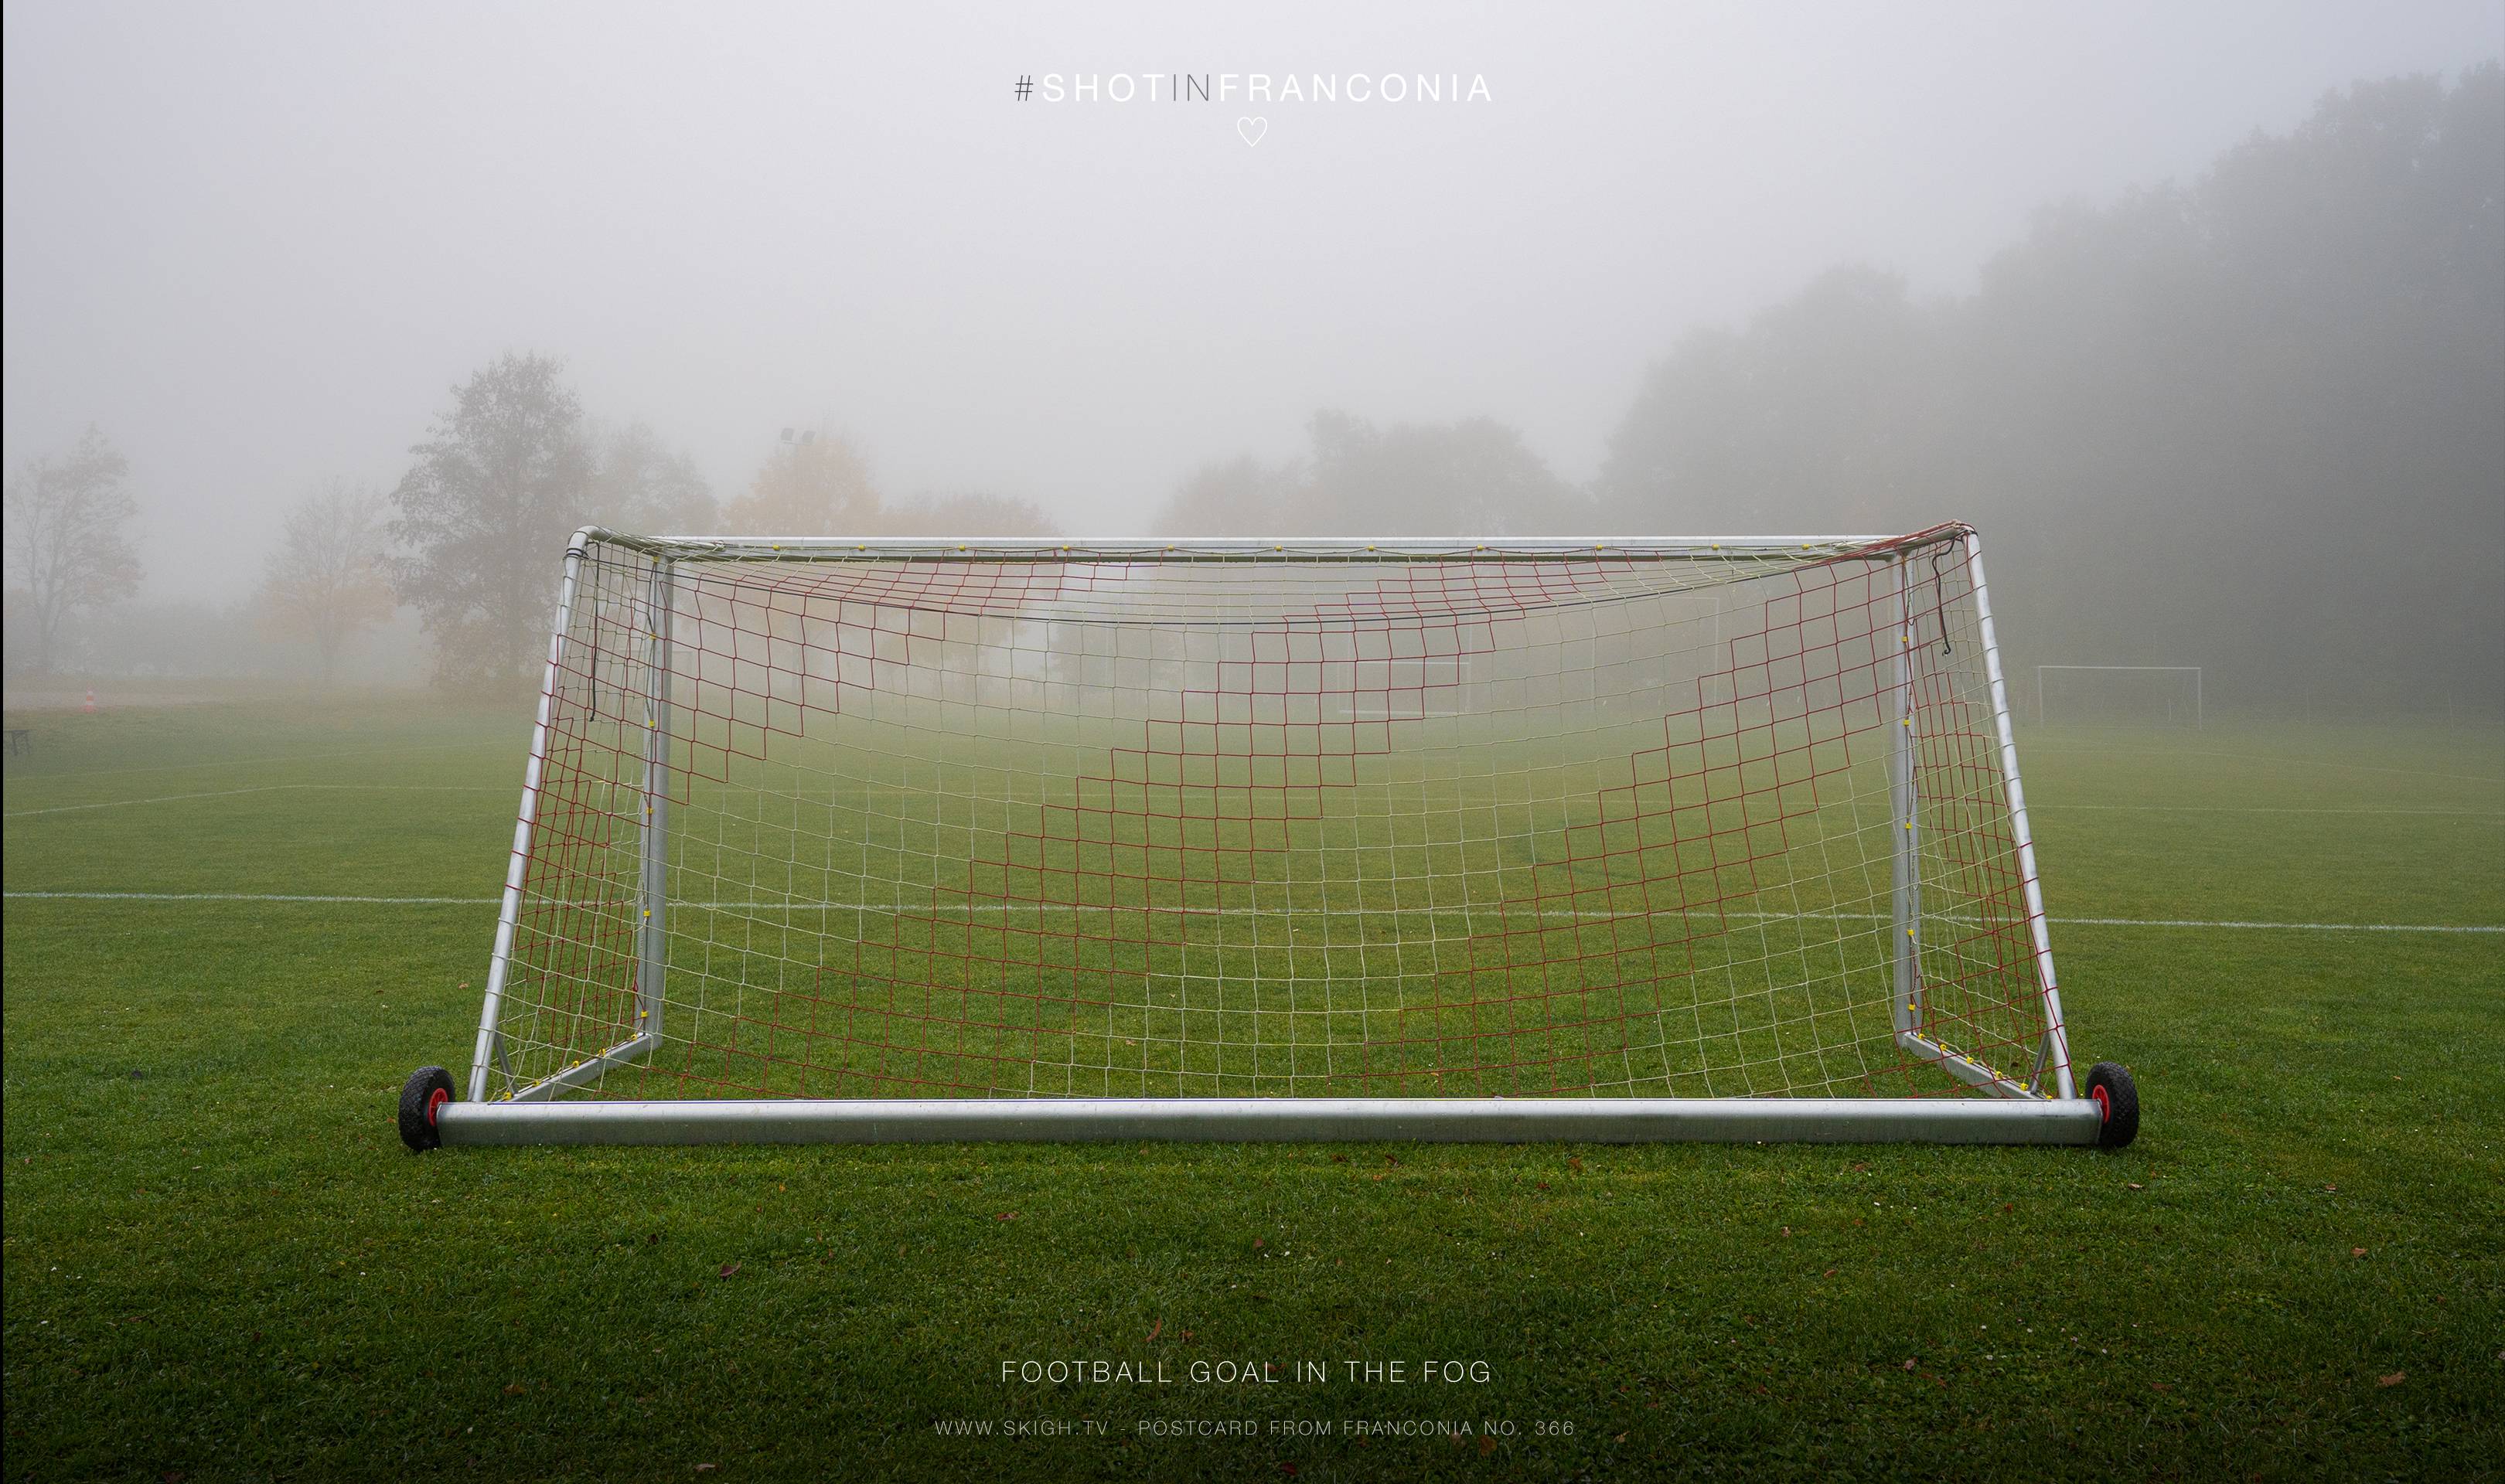 Football goal in the fog